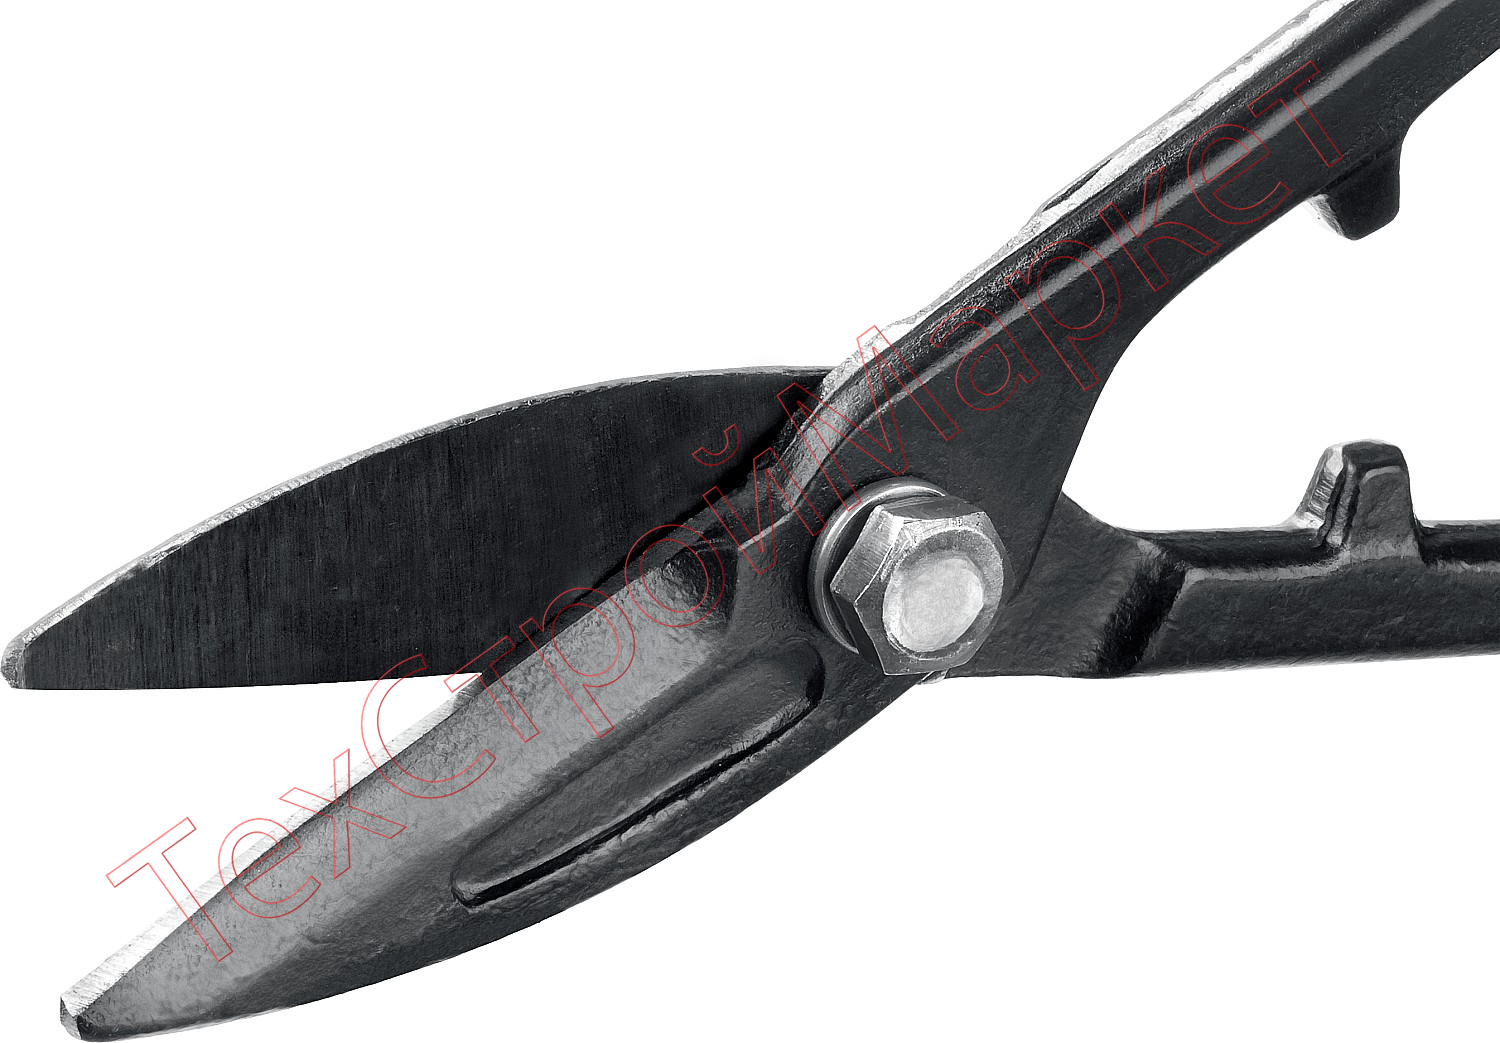  Ножницы по металлу СИБИН, прямые, 250 мм